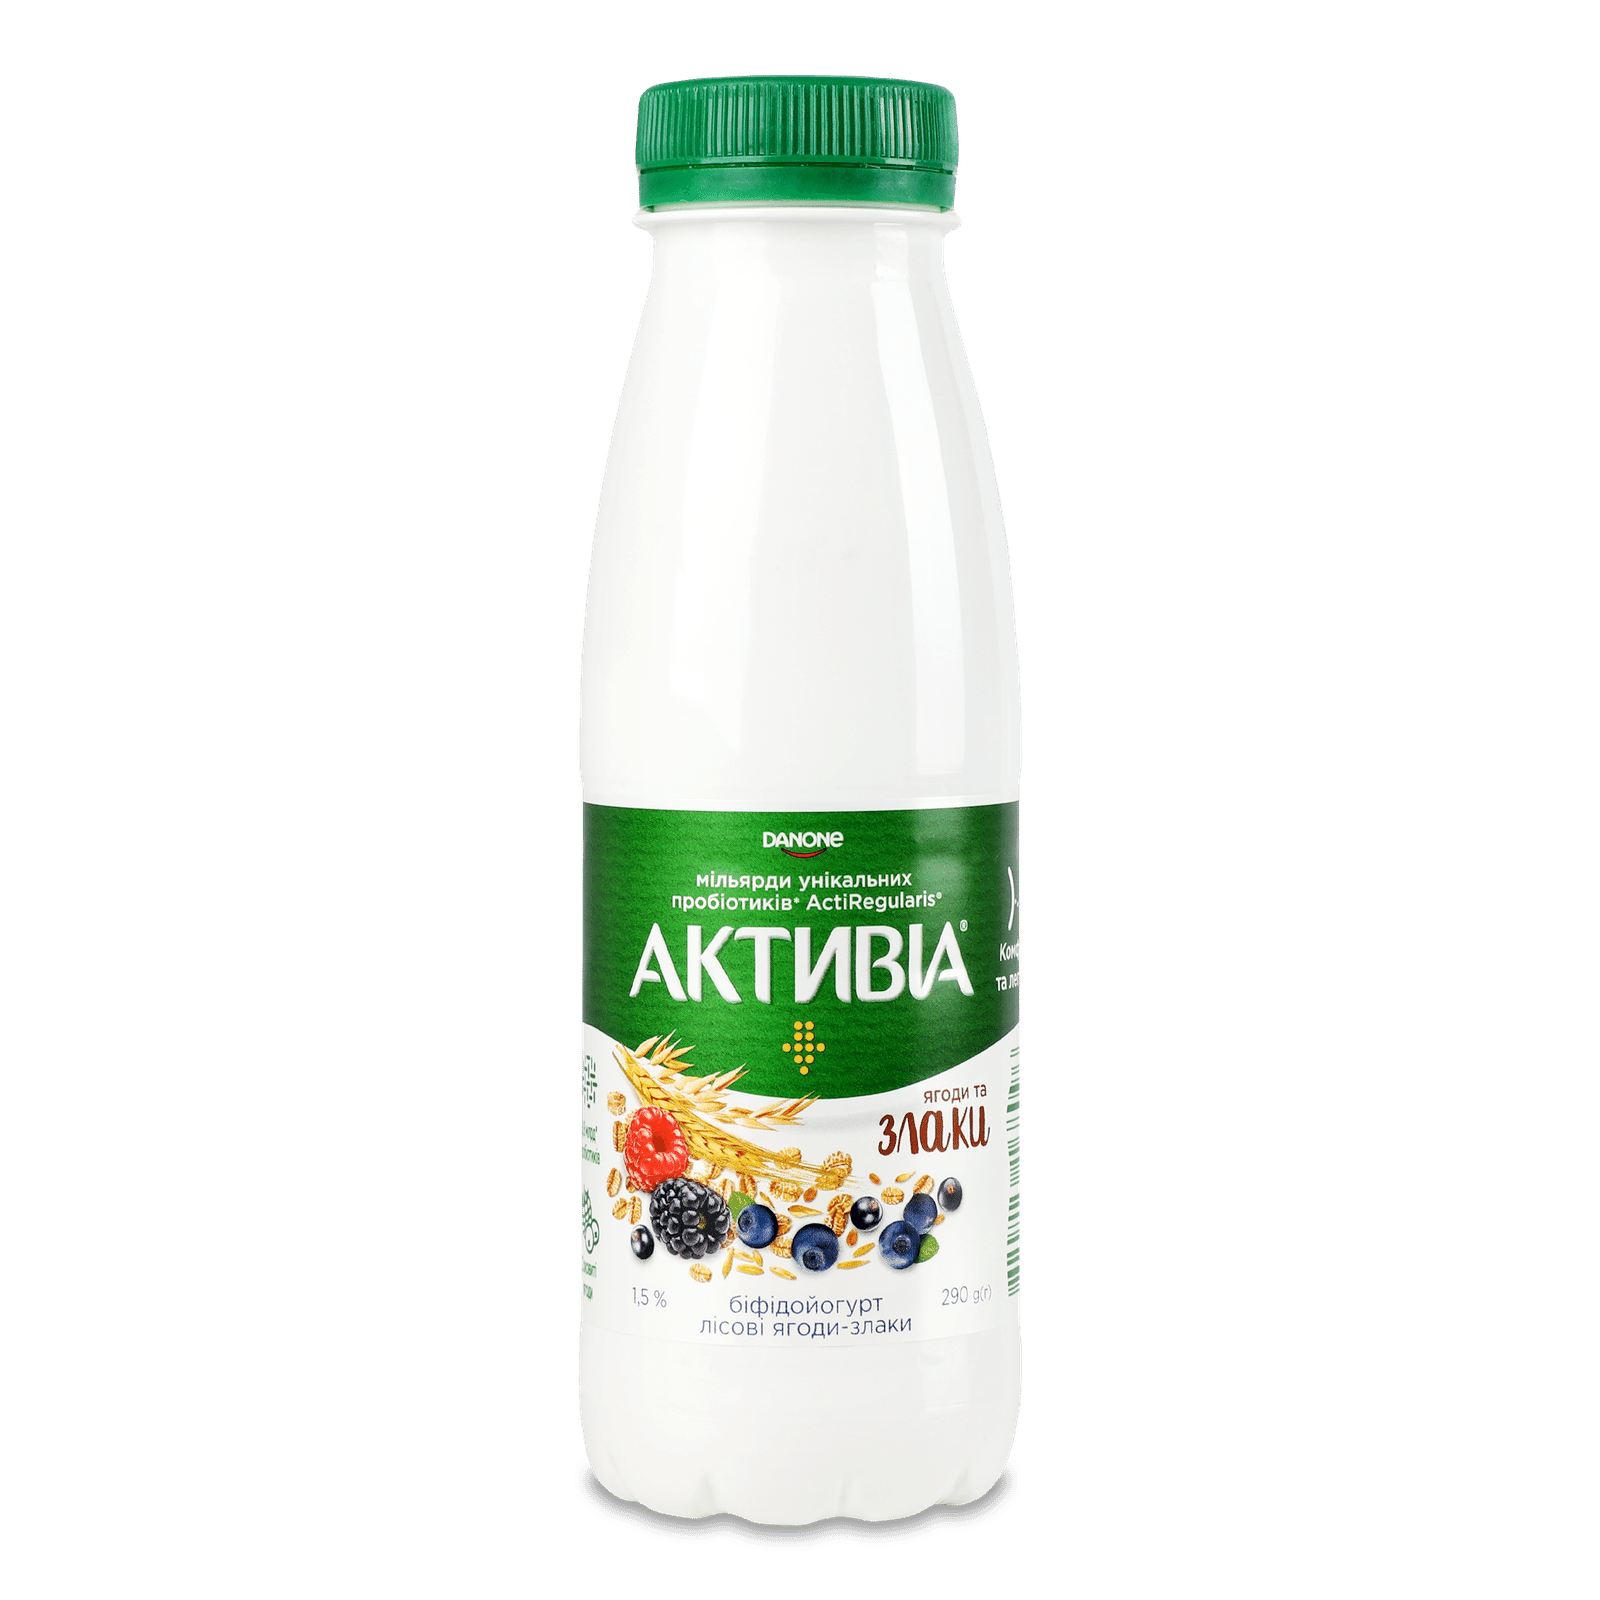 Біфідойогурт Активіа лісові ягоди-злаки 1,5% пляшка - 1